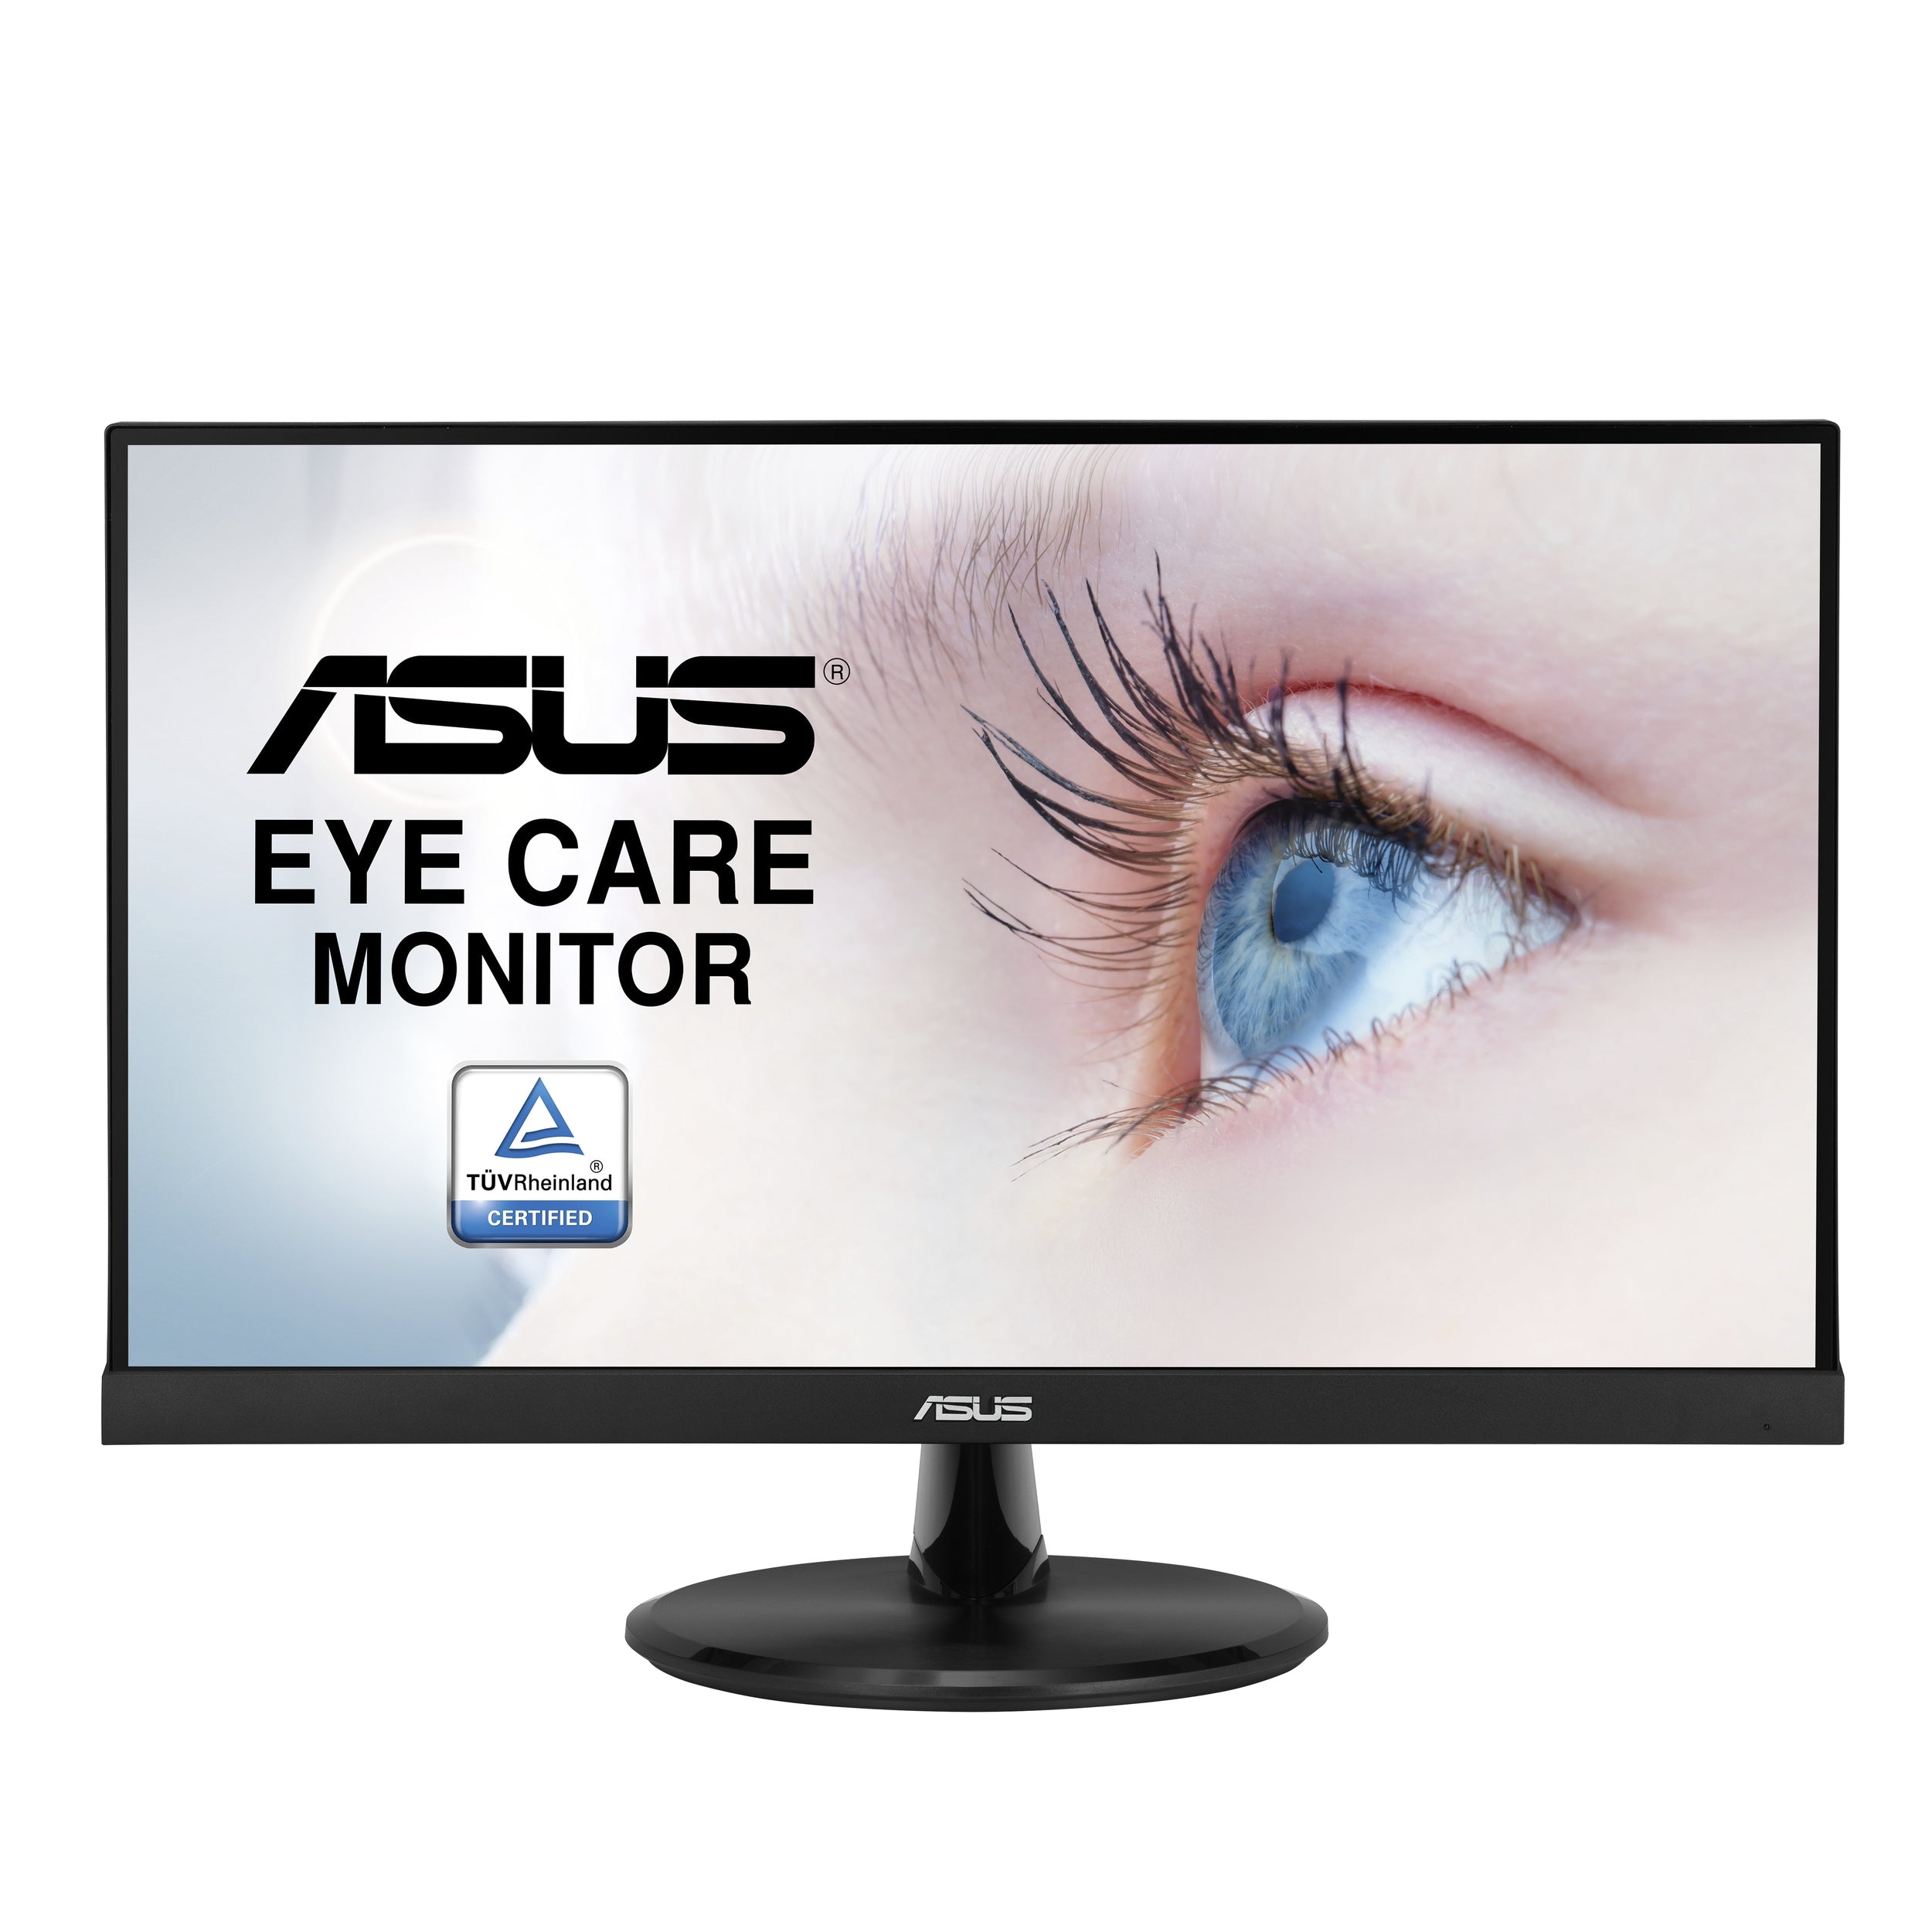 Monitor Asus Vp227He